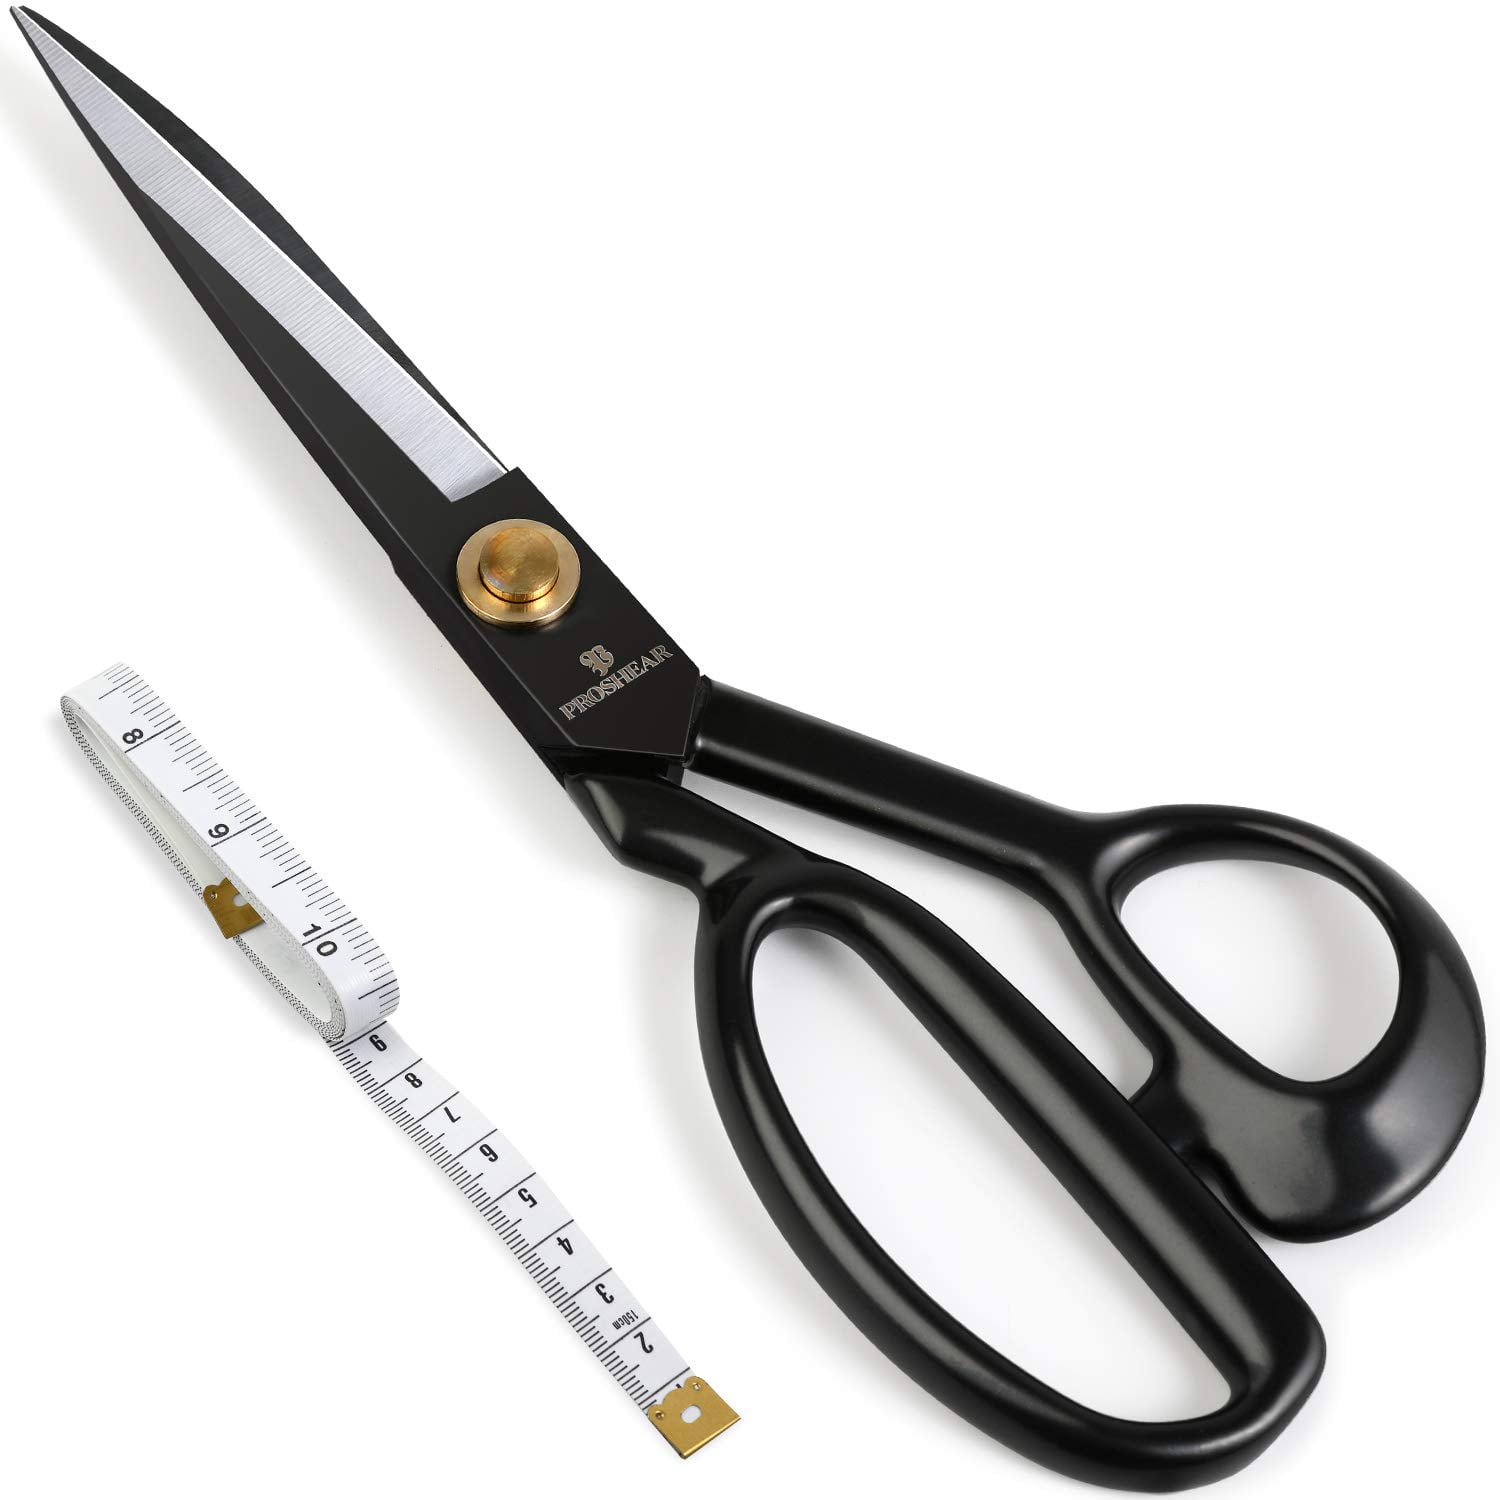 Mr. Pen- Fabric Scissors, Sewing Scissors, 8 inch Premium Tailor